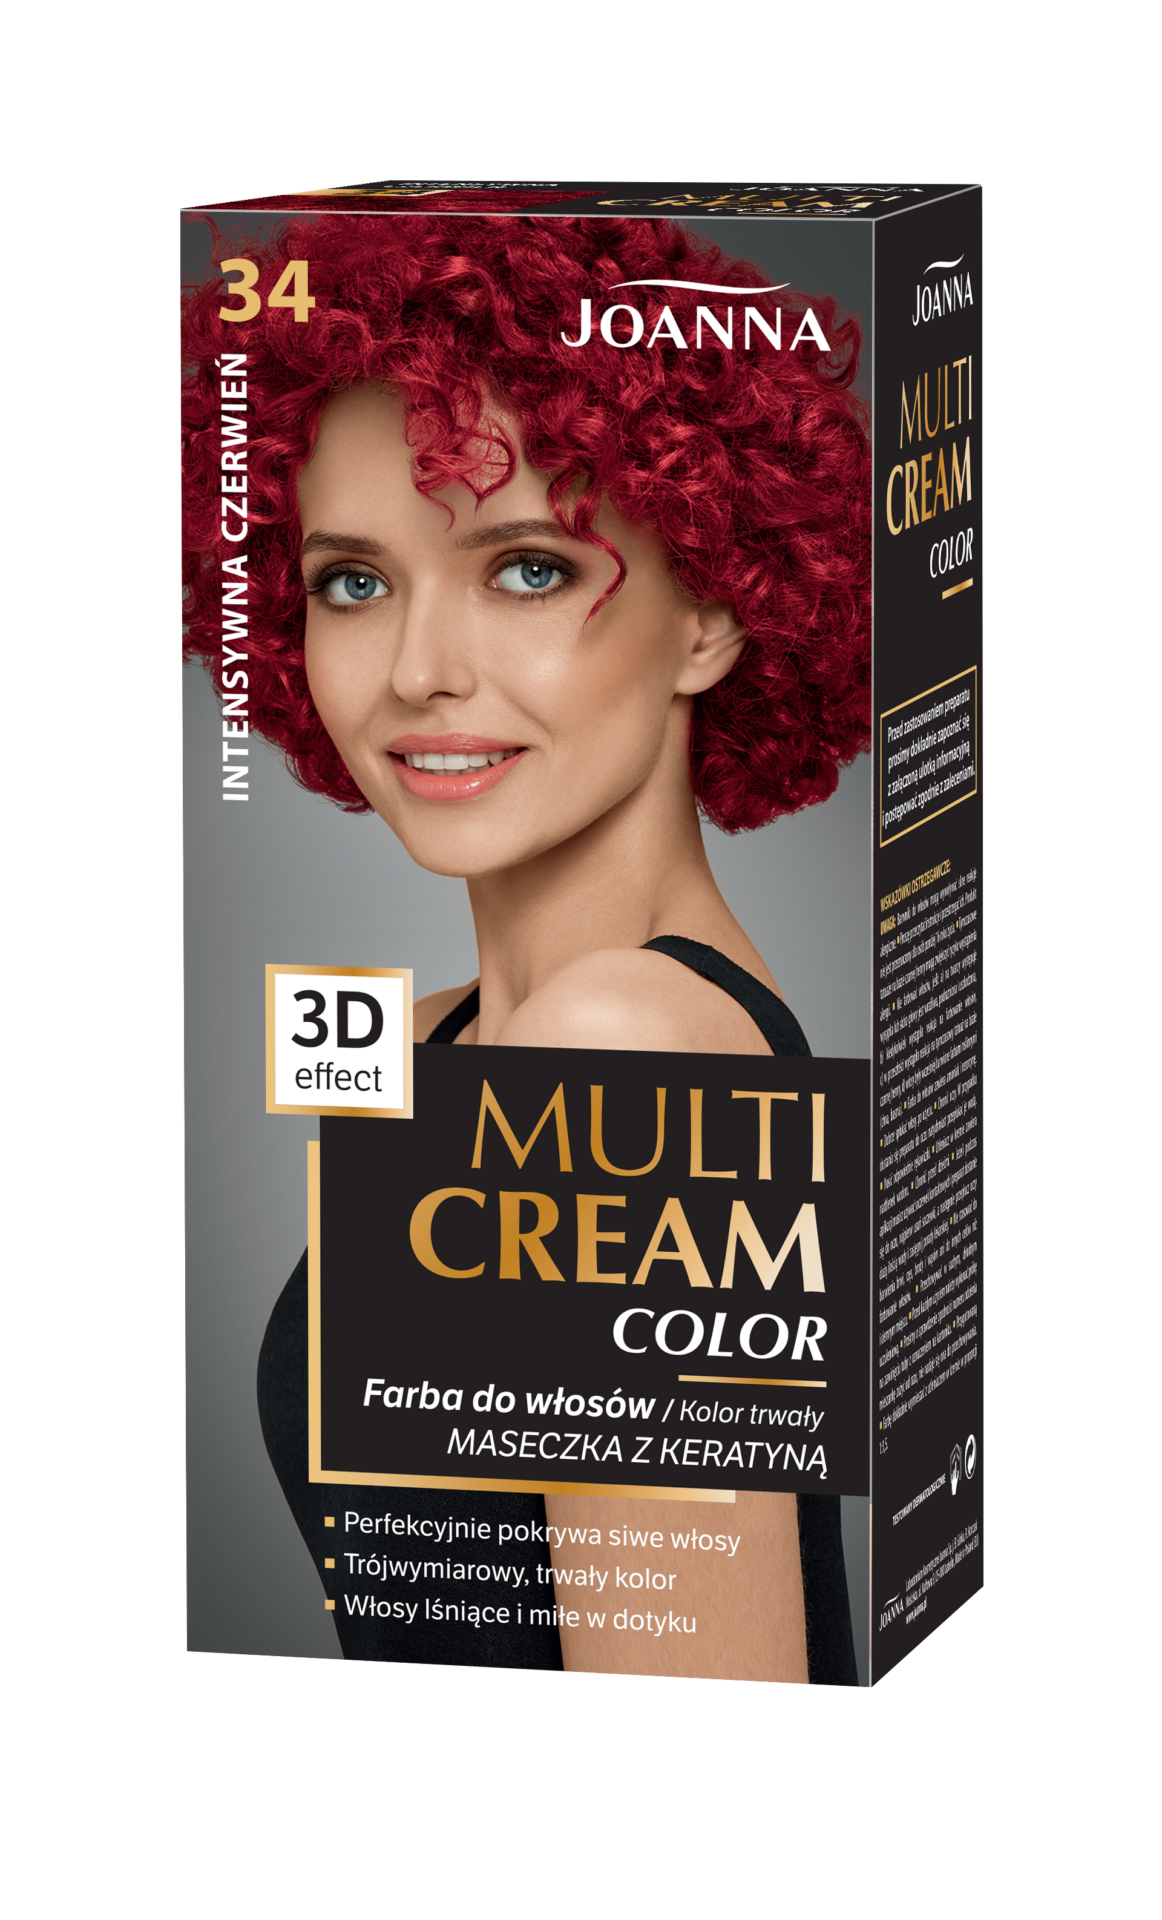 Trwała farba do włosów Joanna Multi Cream Color w odcieniu intensywna czerwień nr 34